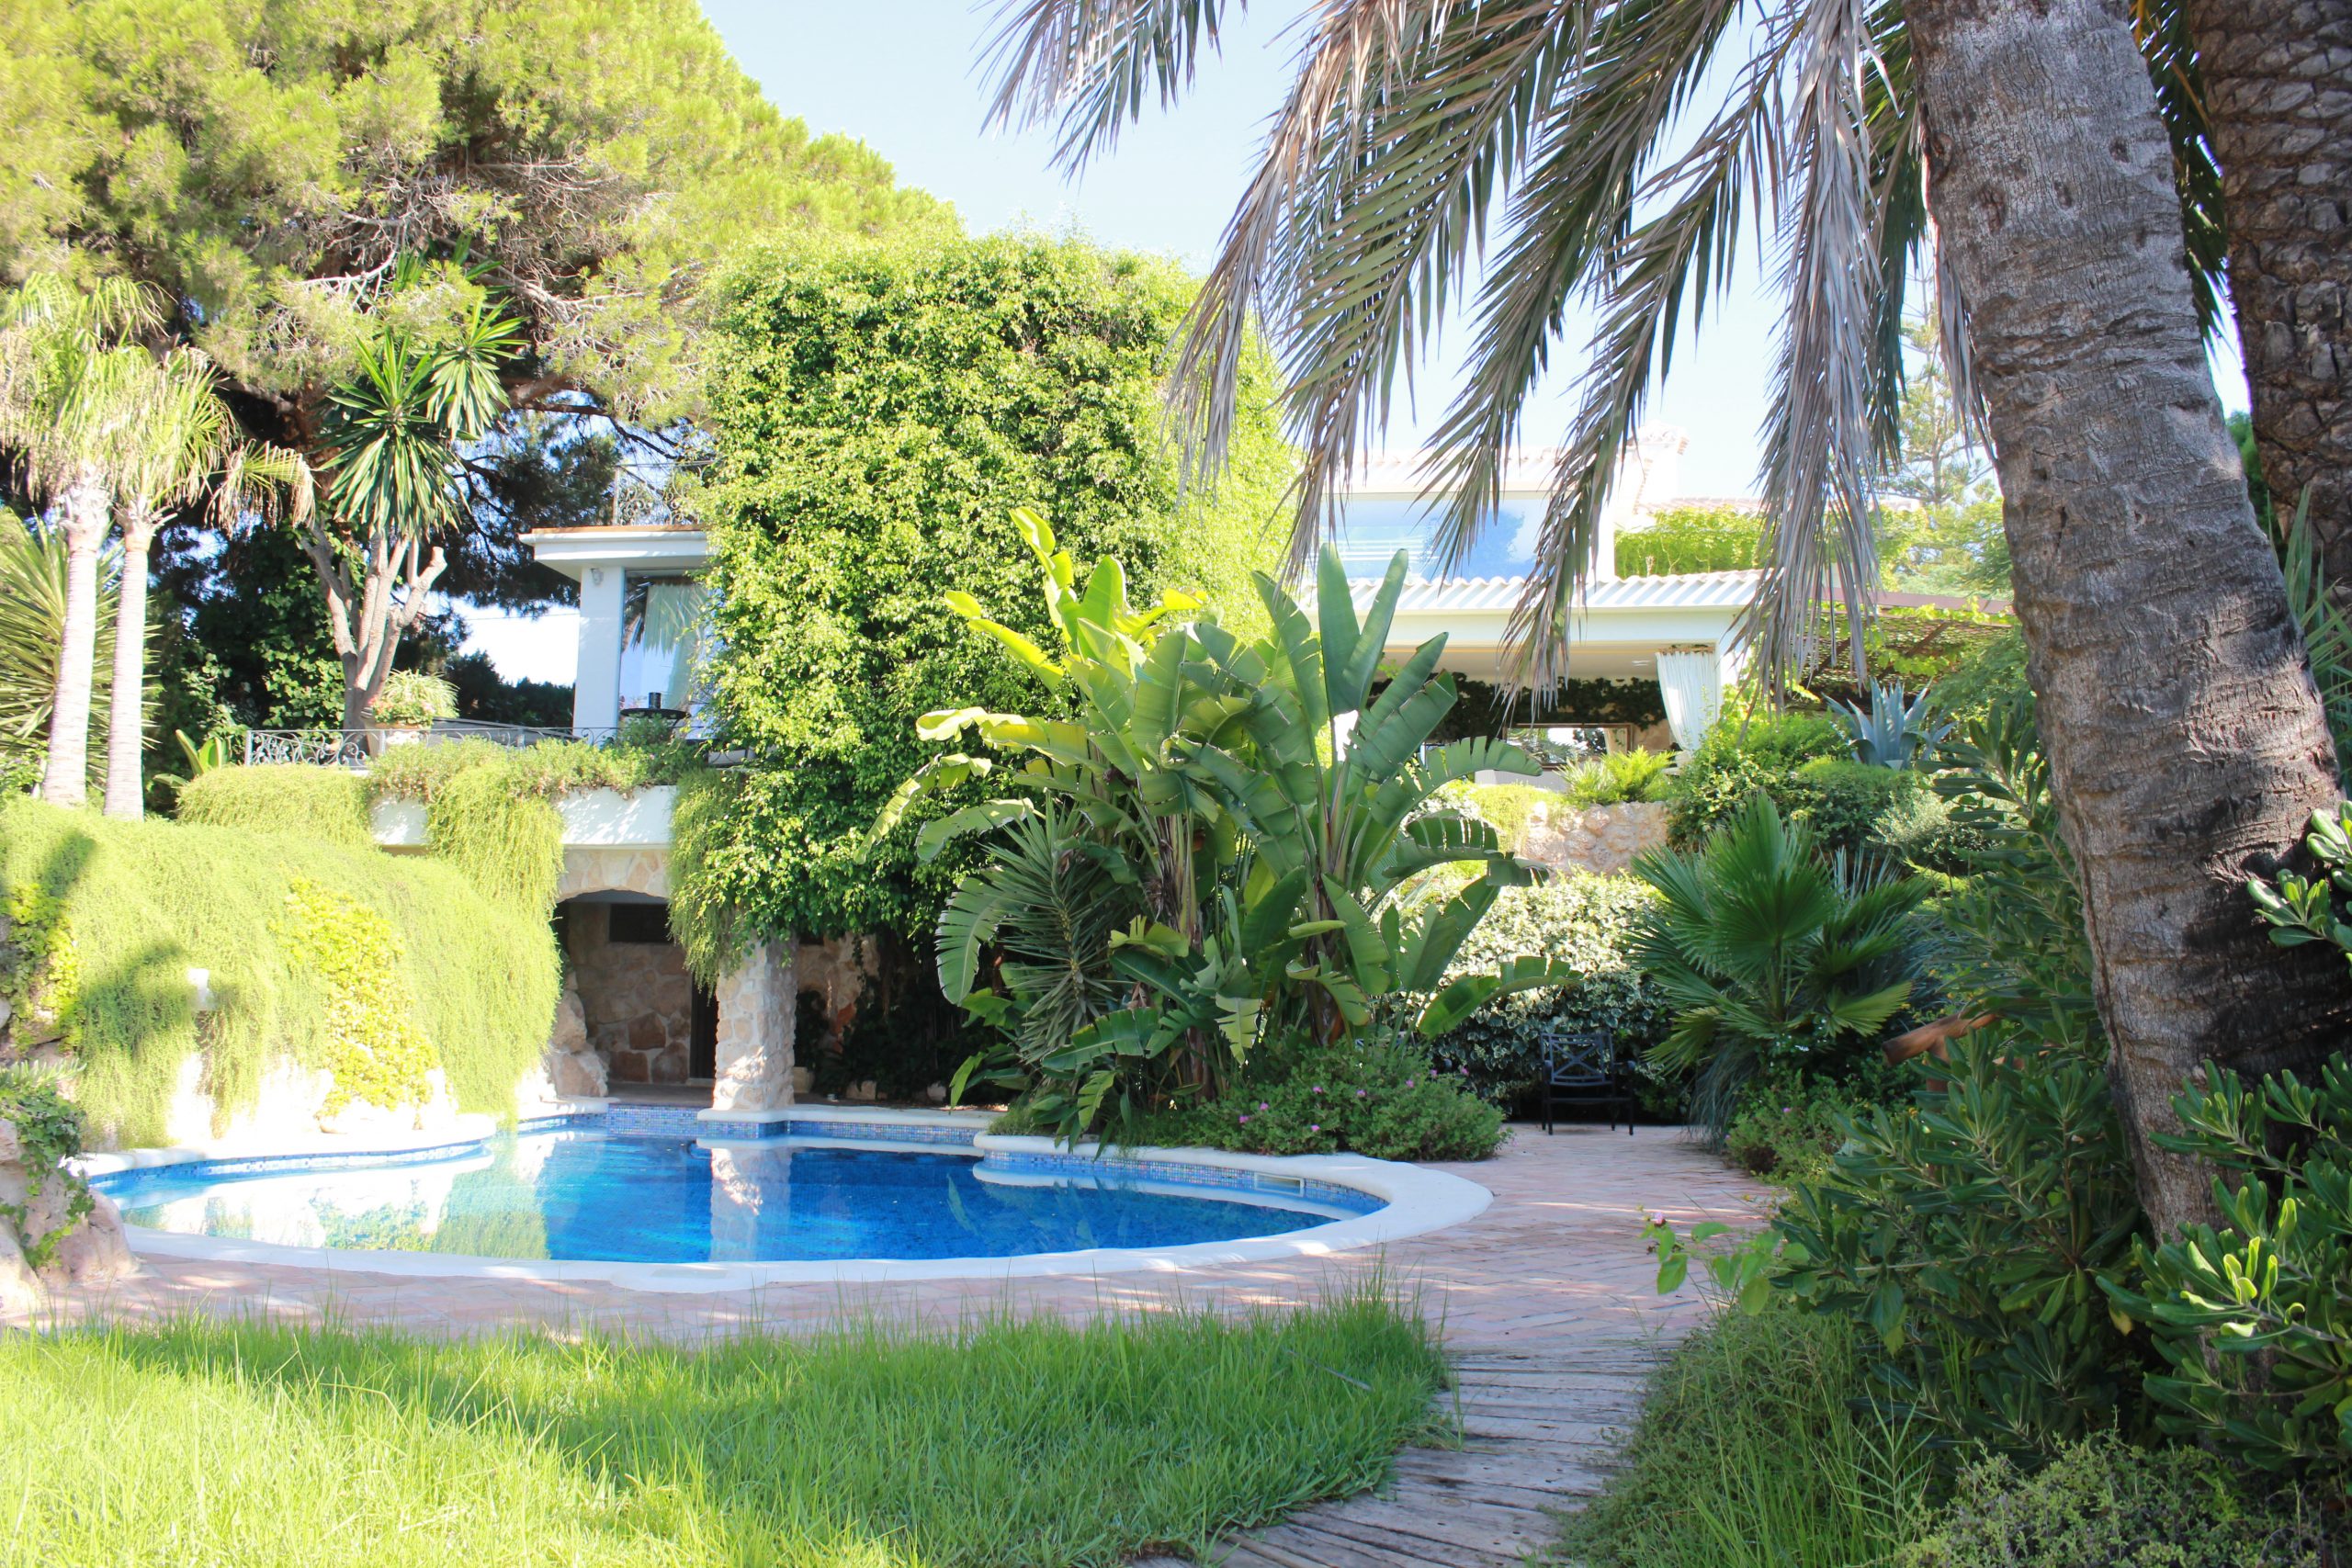 Portal Inmobiliario de Lujo en Cabo Roig, presenta villa de lujo venta en Alicante, chalet lujoso para comprar y viviendas exclusivas en venta en Costa Blanca.